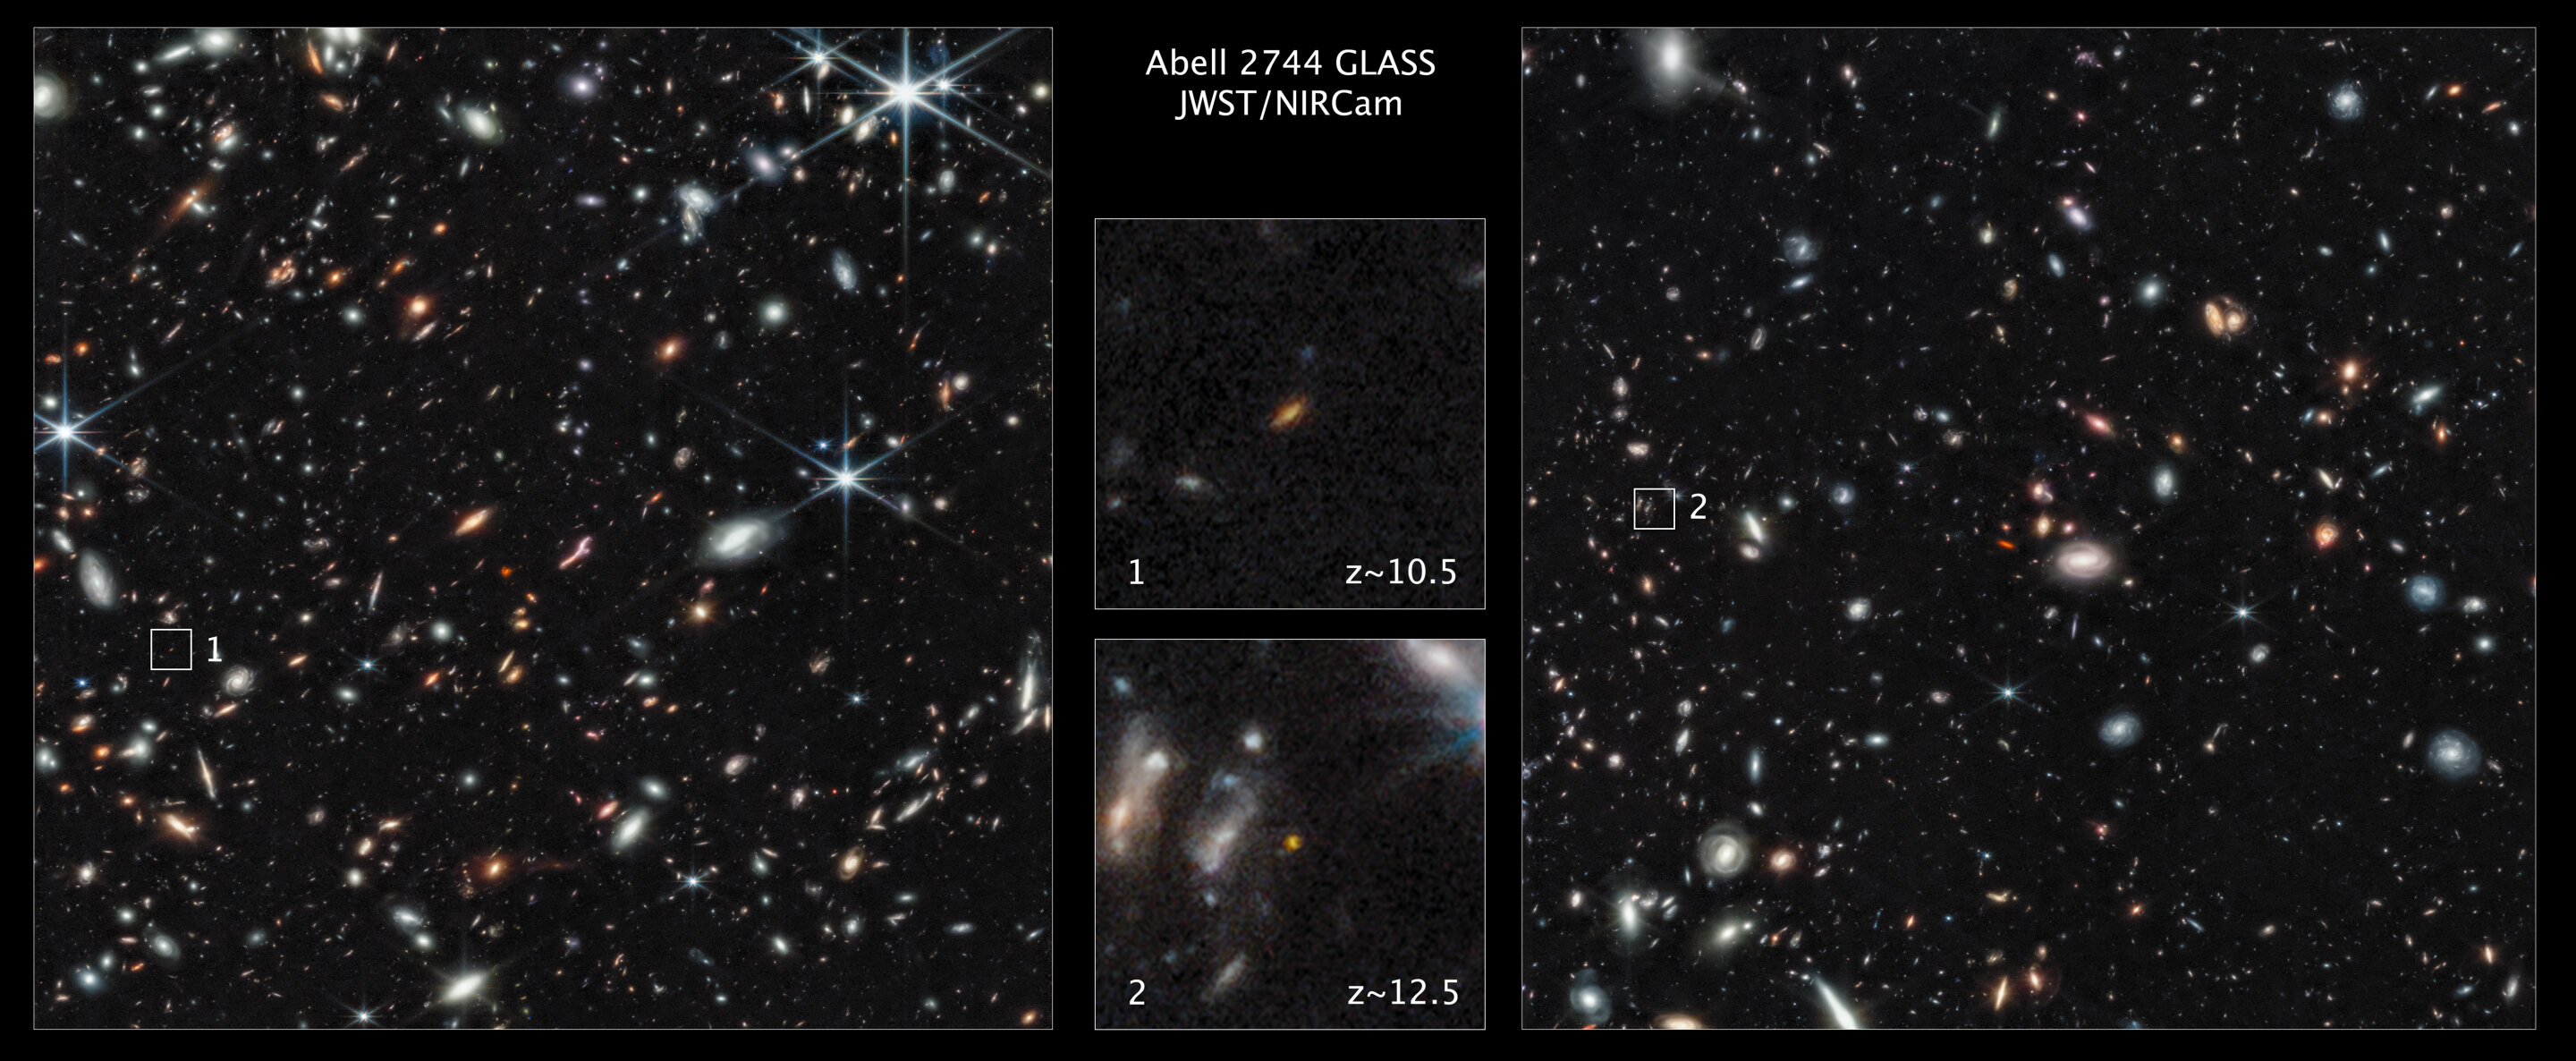 #Webb Space Telescope spots early galaxies hidden from Hubble